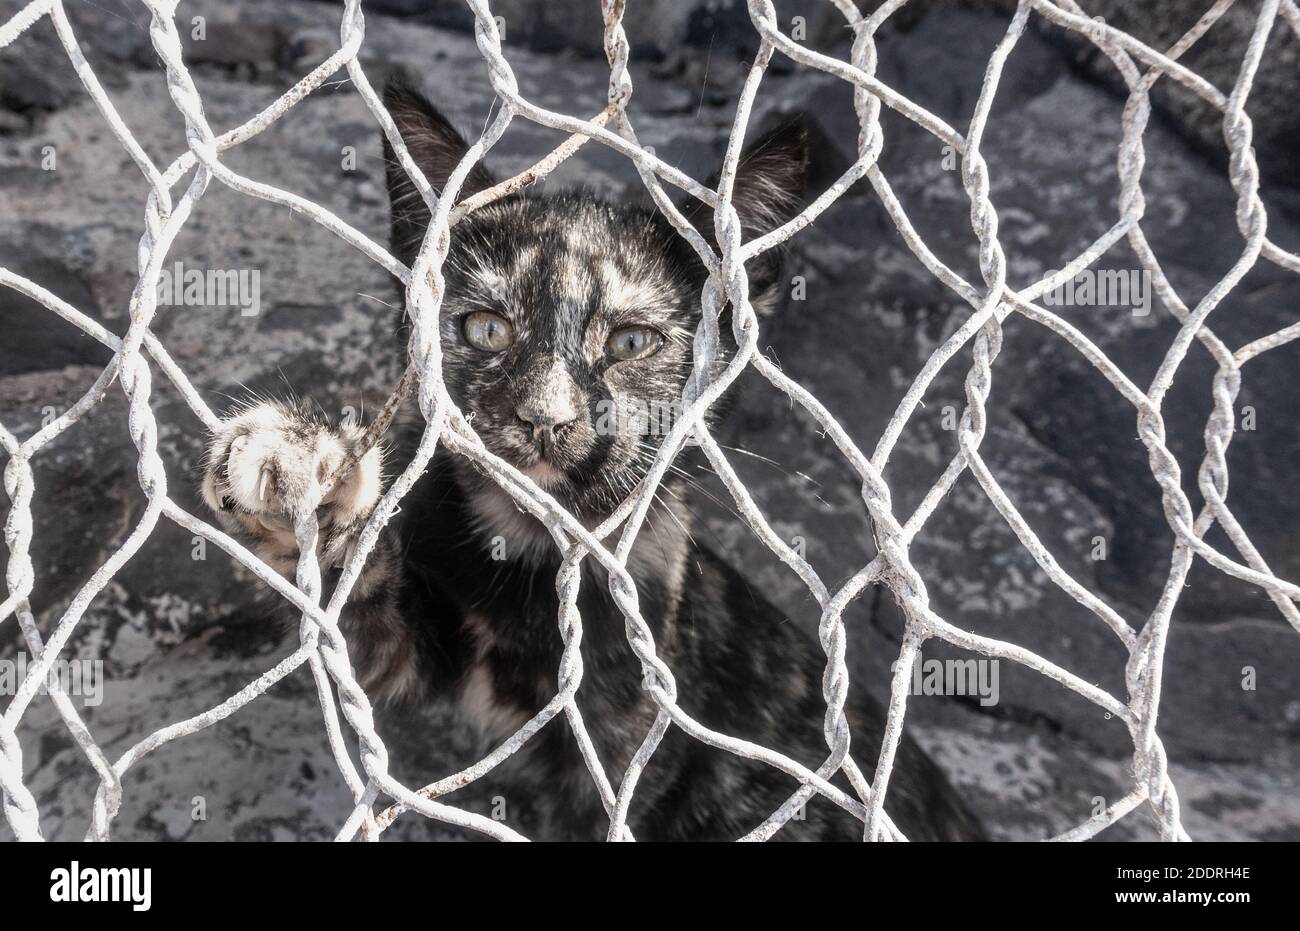 Gatto feriale/gattino dietro la recinzione del filo. Foto Stock